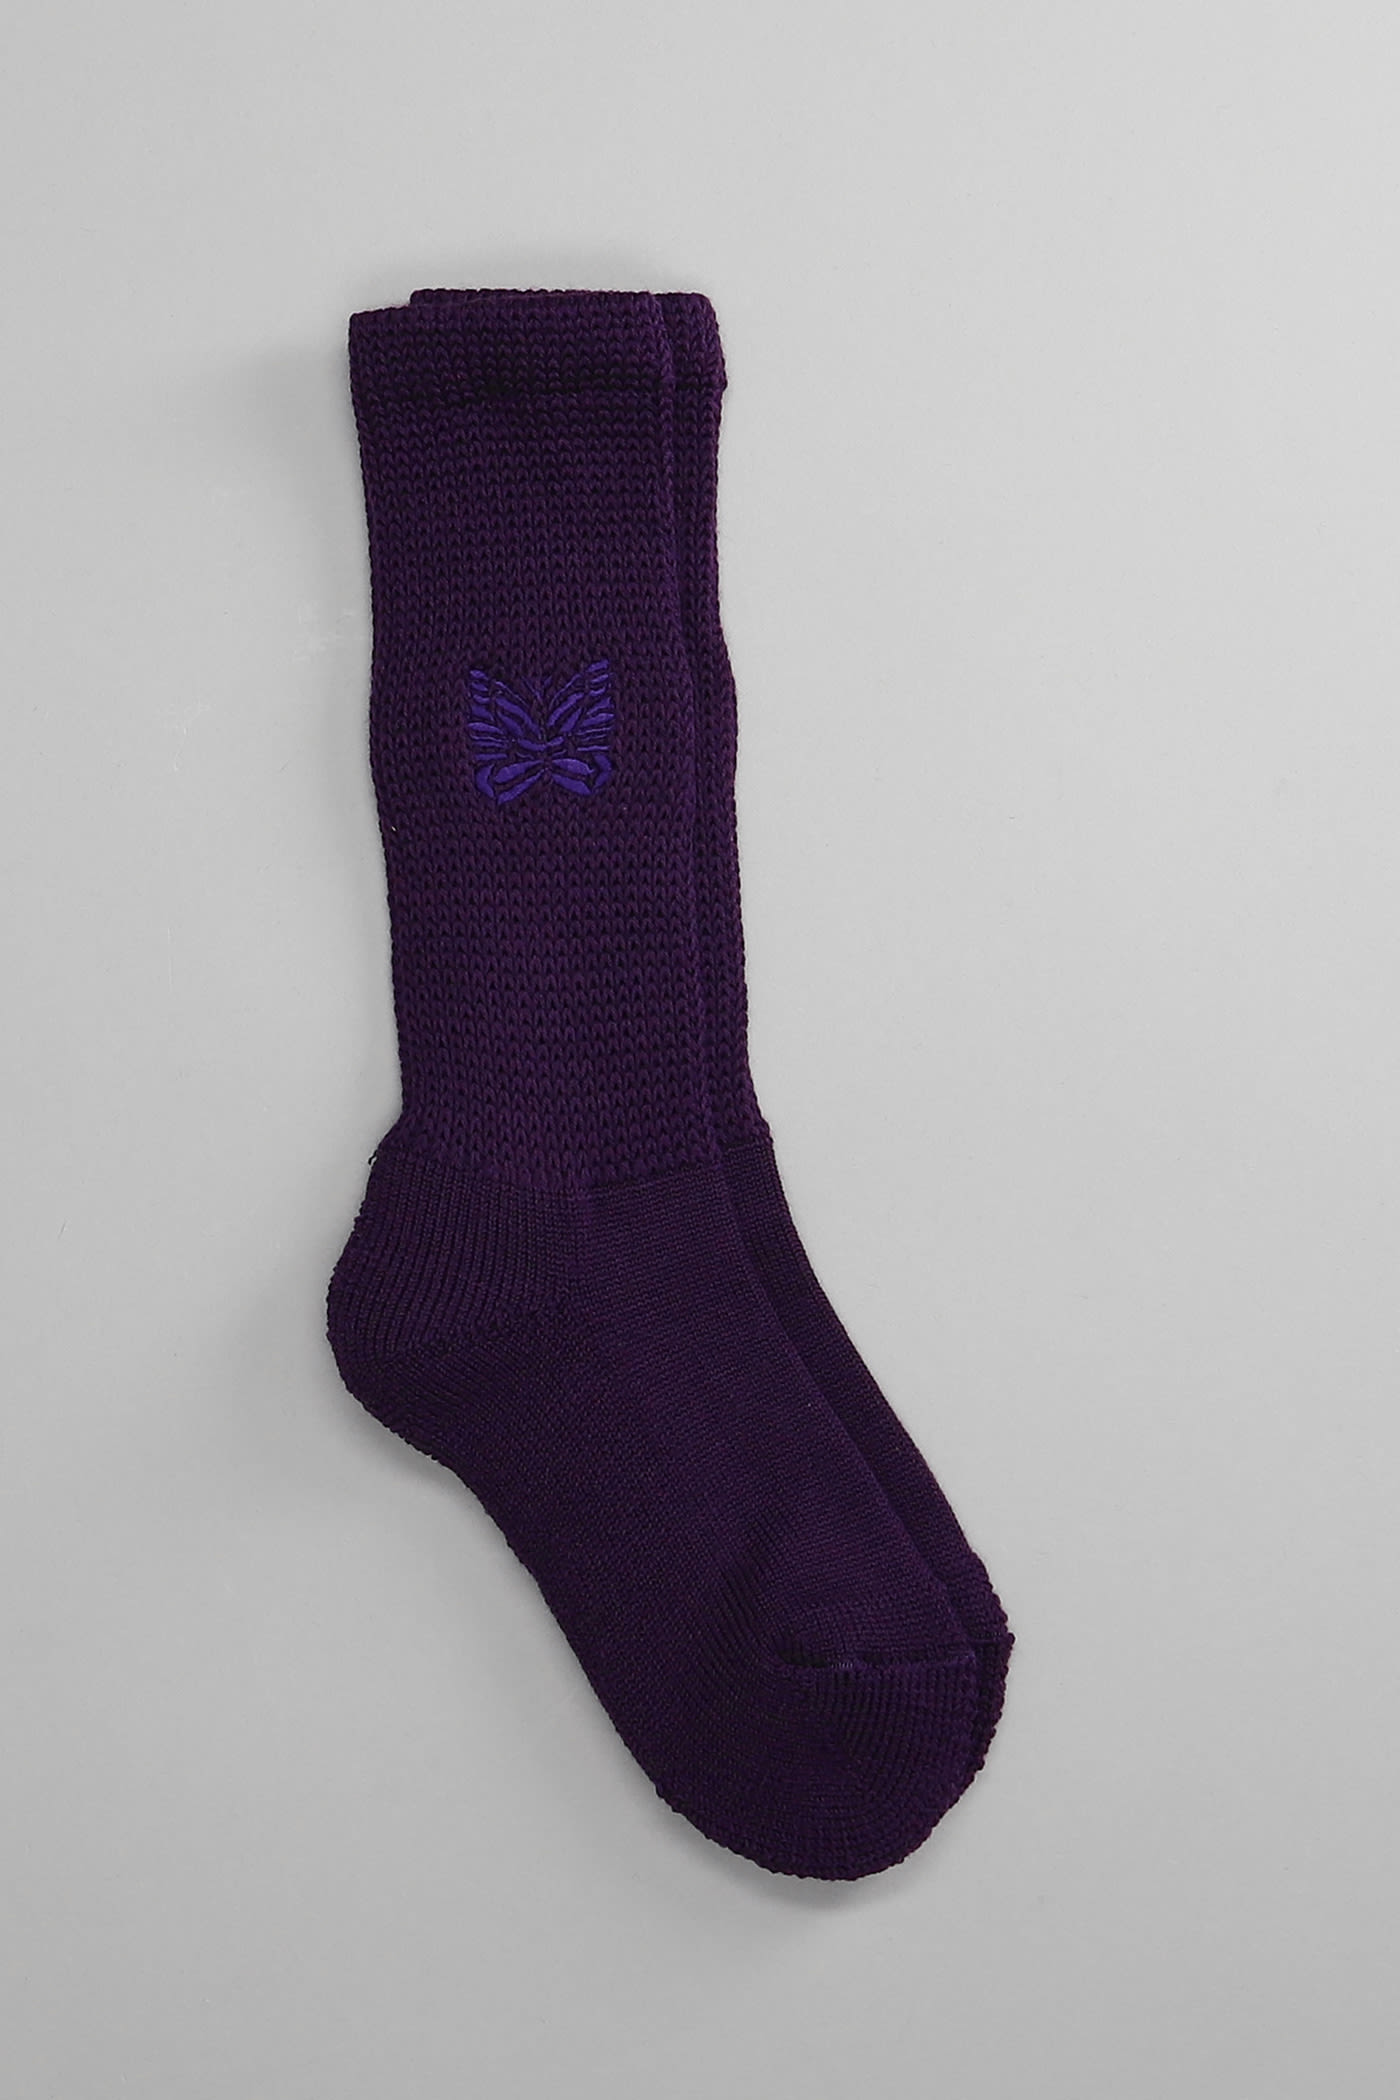 Needles Socks In Viola Wool